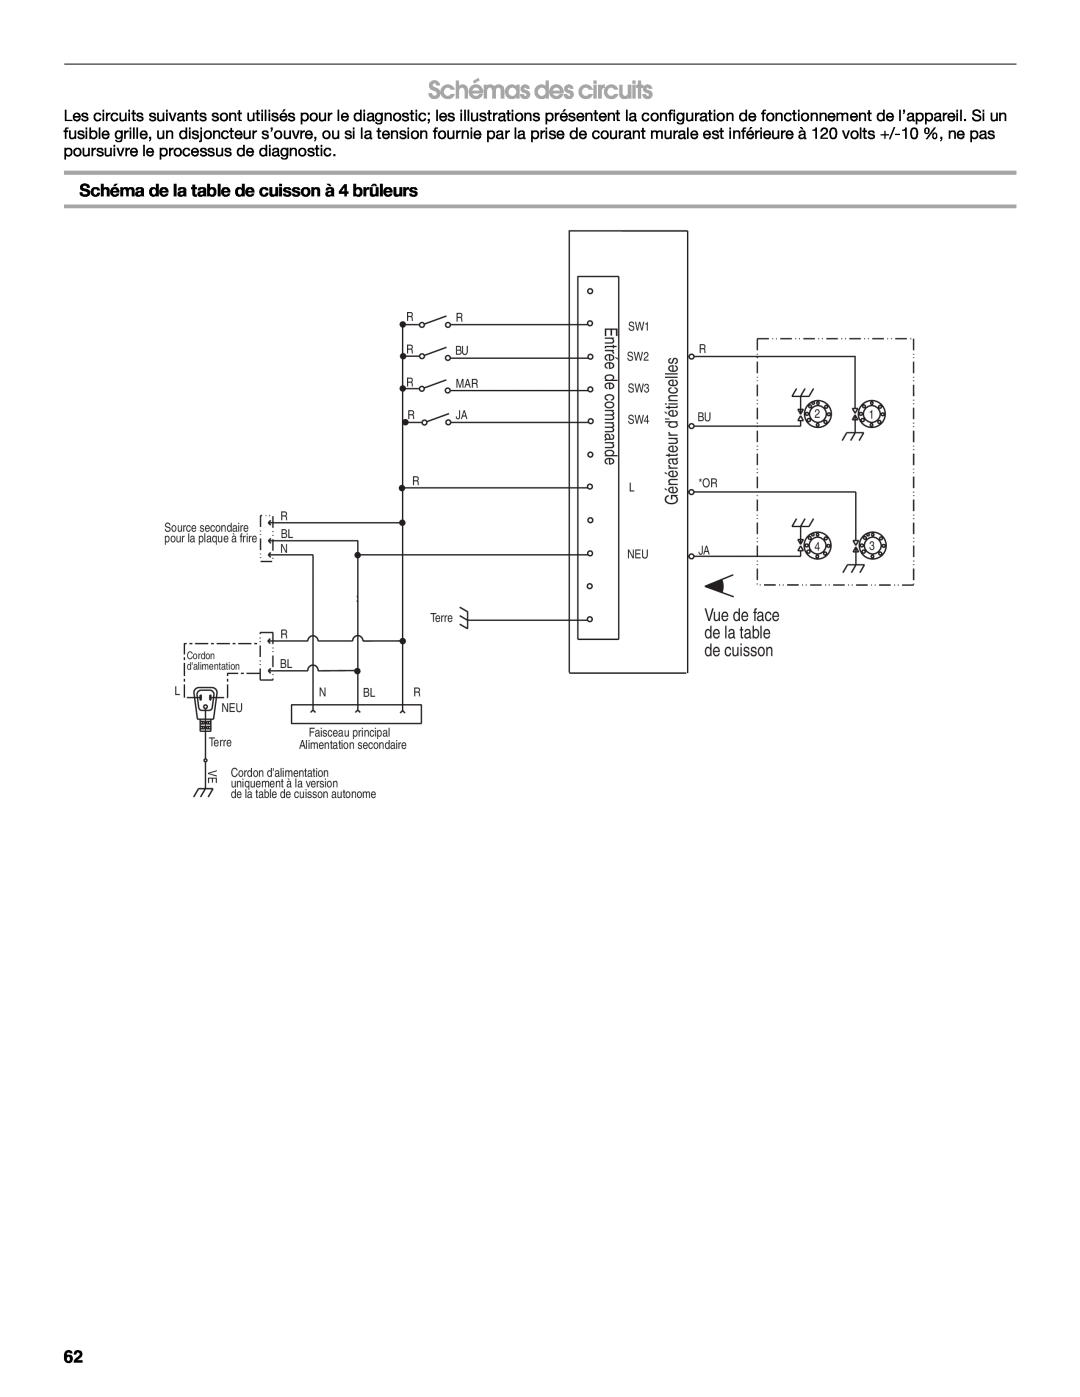 Jenn-Air W10394575A installation instructions Schémas des circuits, Schéma de la table de cuisson à 4 brûleurs 